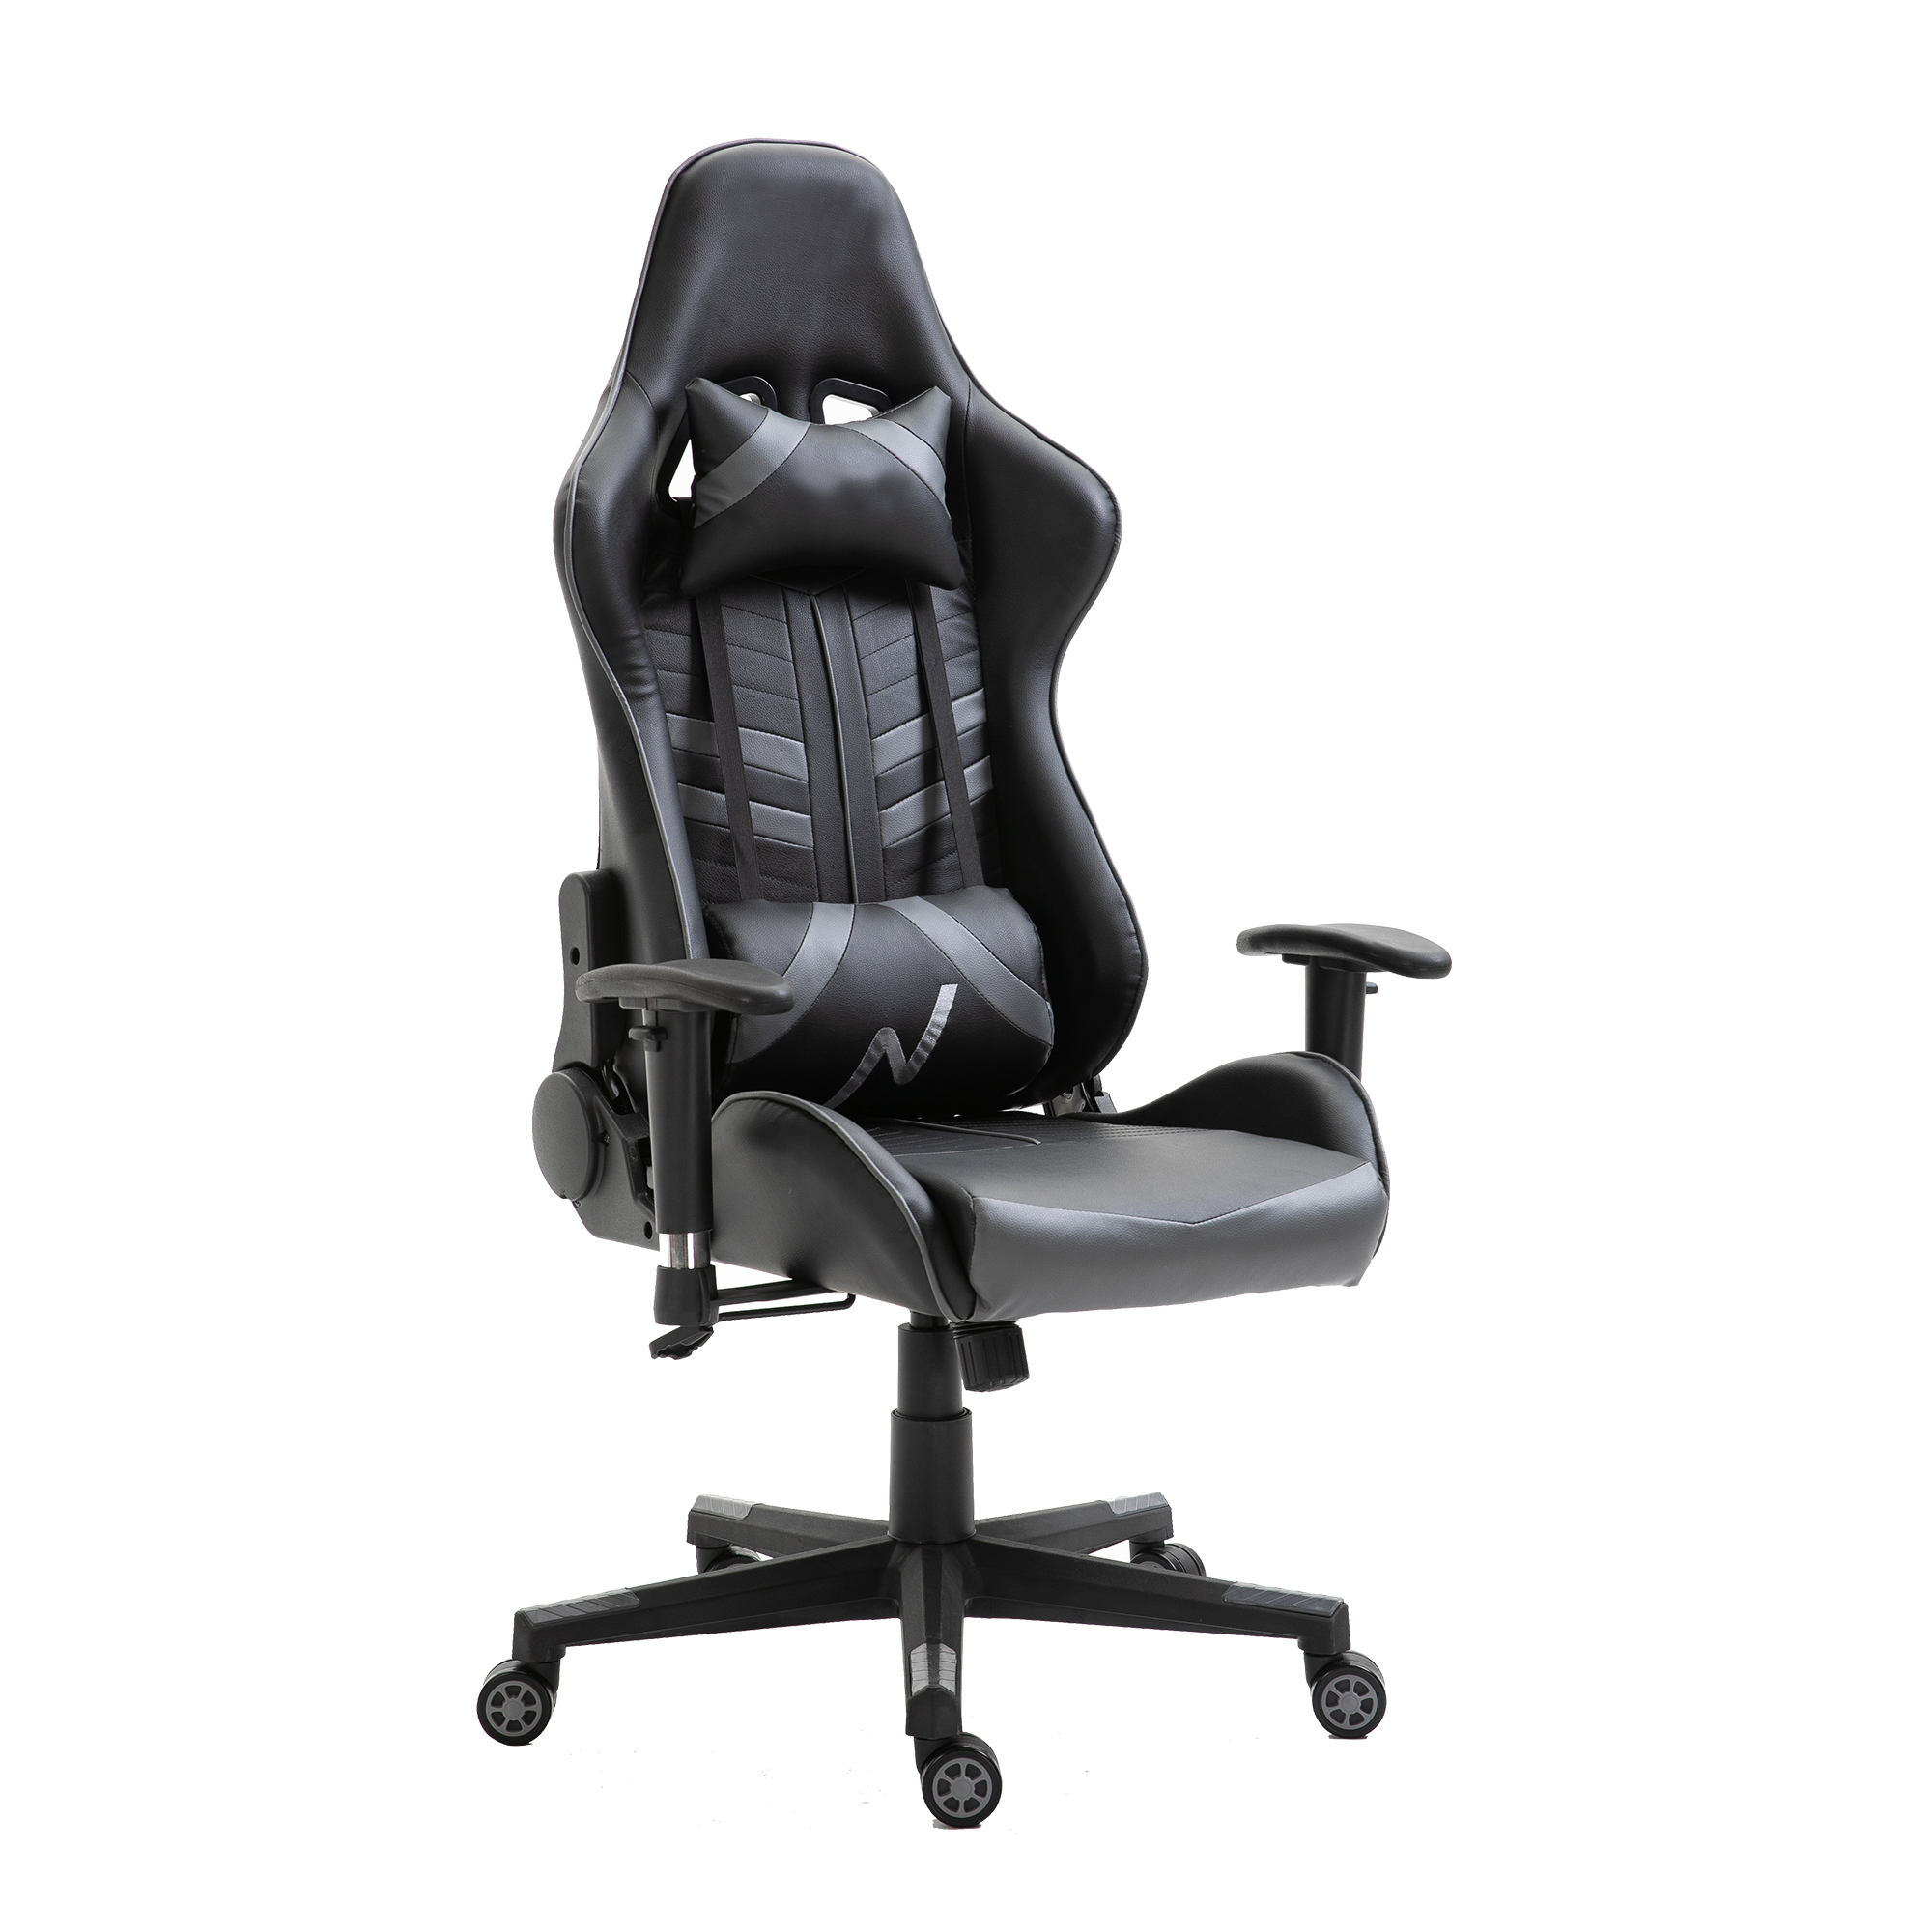 https://www.gamingchairsoem.com/pu-leather-gaming-racestoel-draaibare-comfortabele-ergonomic-racing-gaming-stoel-product/